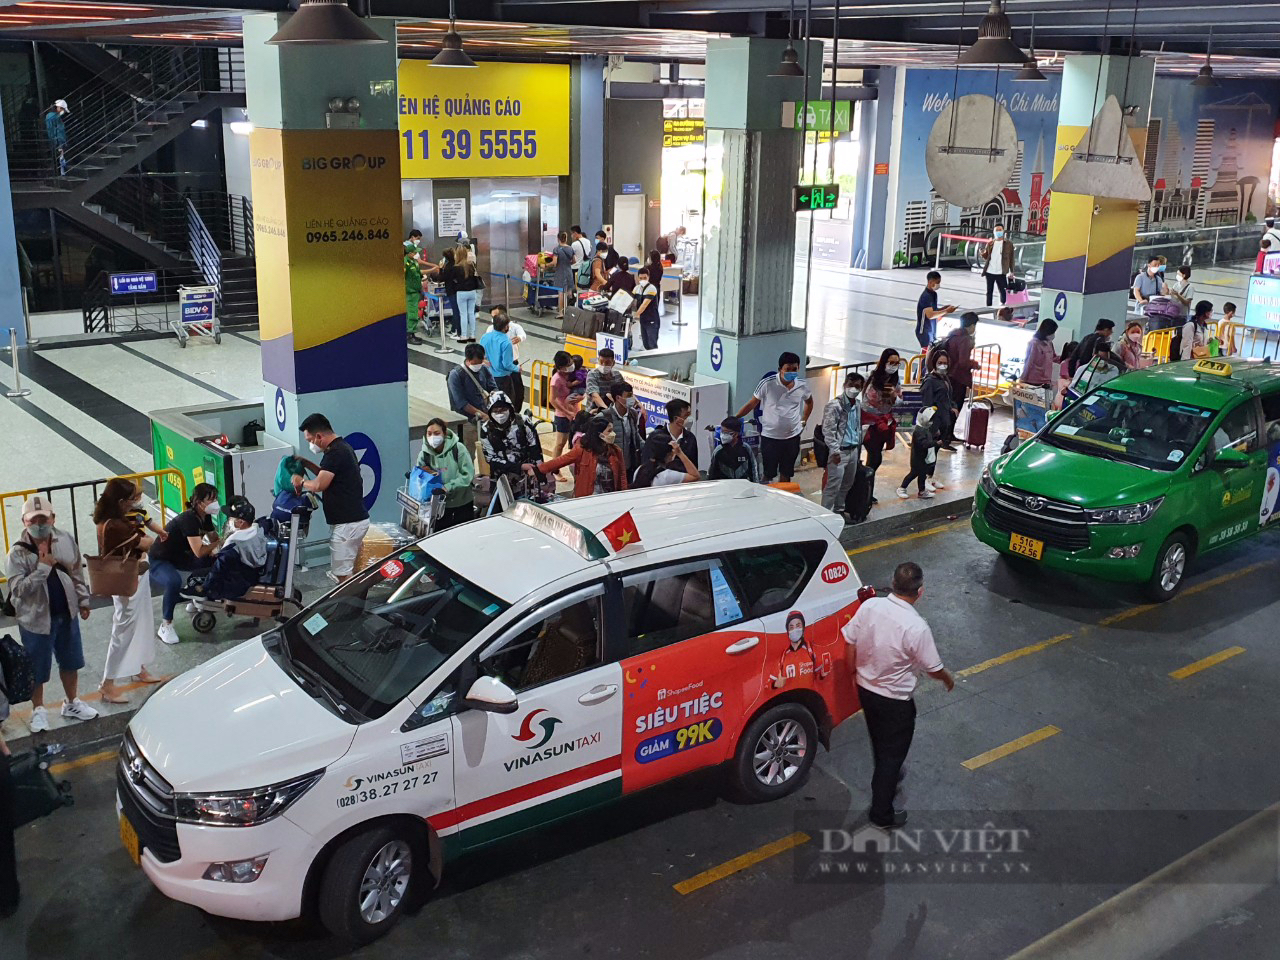 Chủ hãng taxi Saigontourist bị dừng hoạt động ở Tân Sơn Nhất nói đang tìm mọi cách để được chạy lại - Ảnh 3.